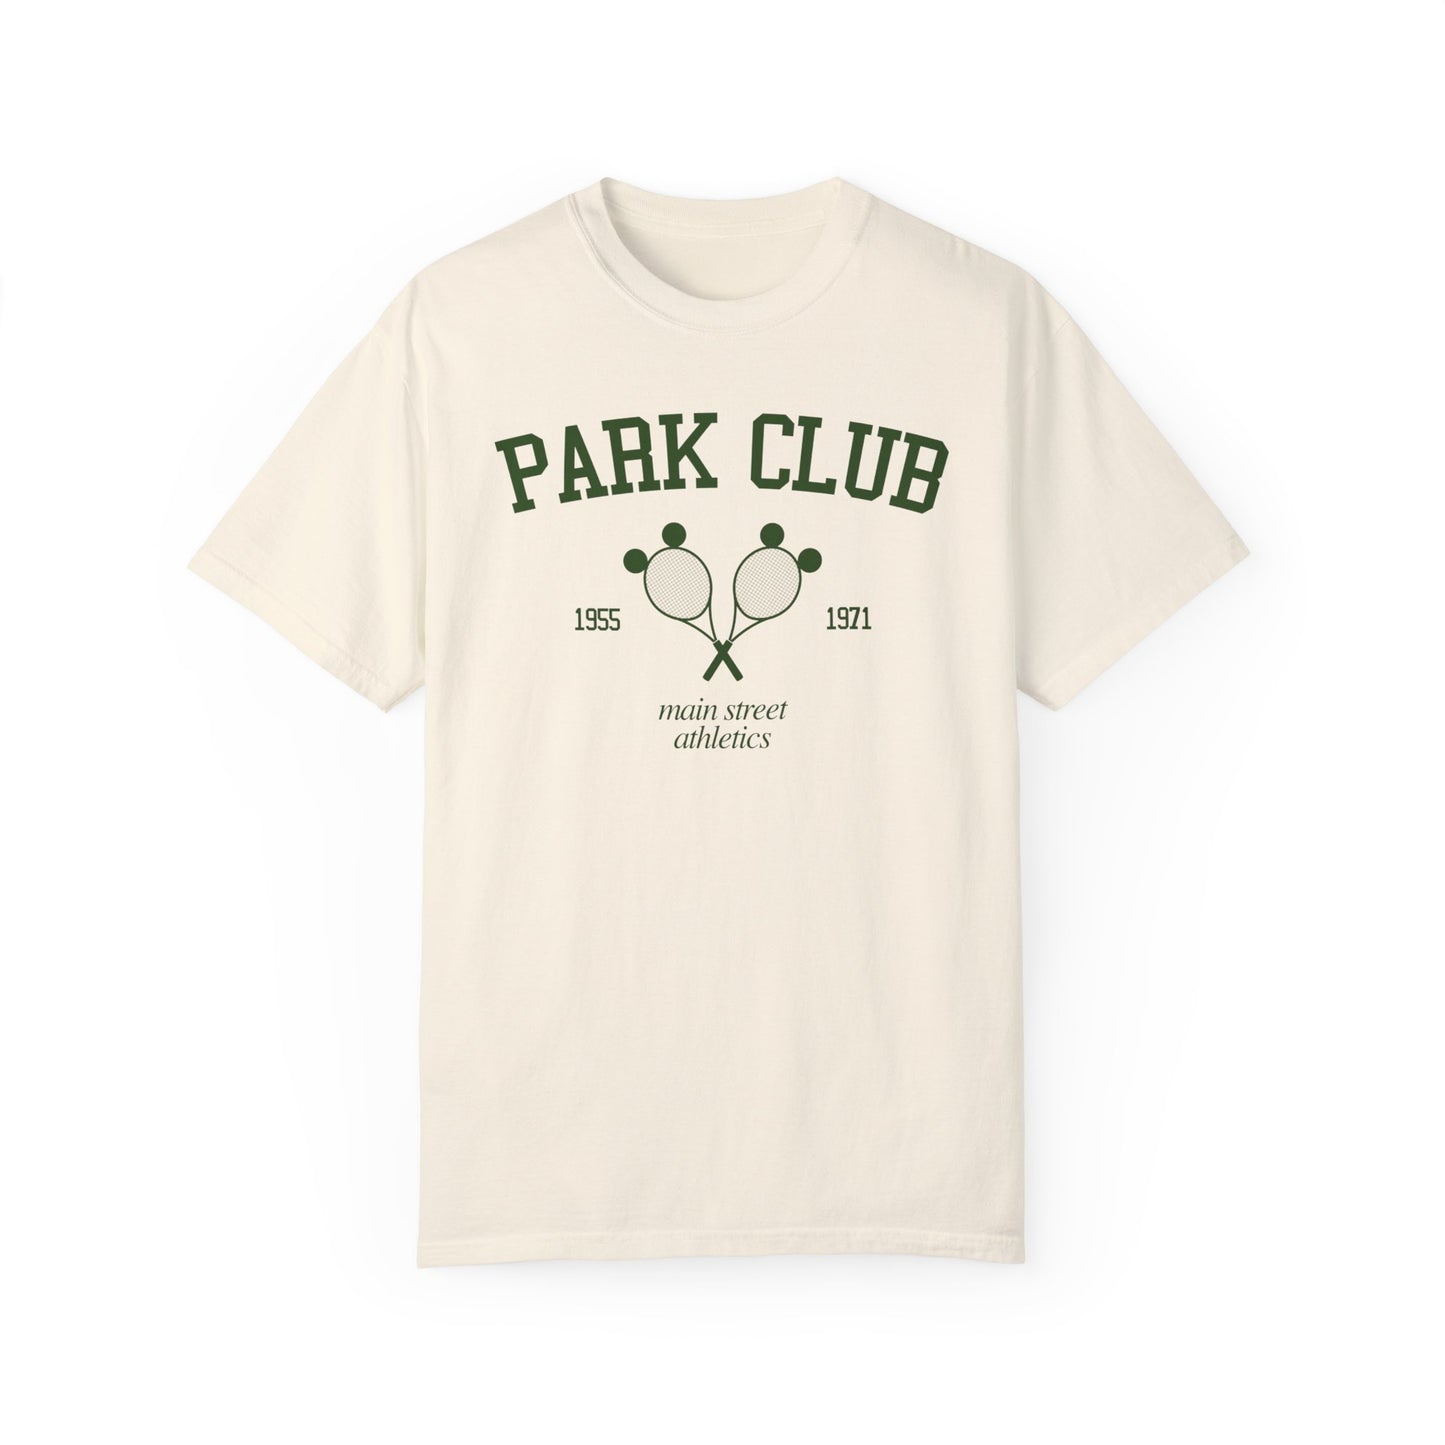 Park Club - Tee